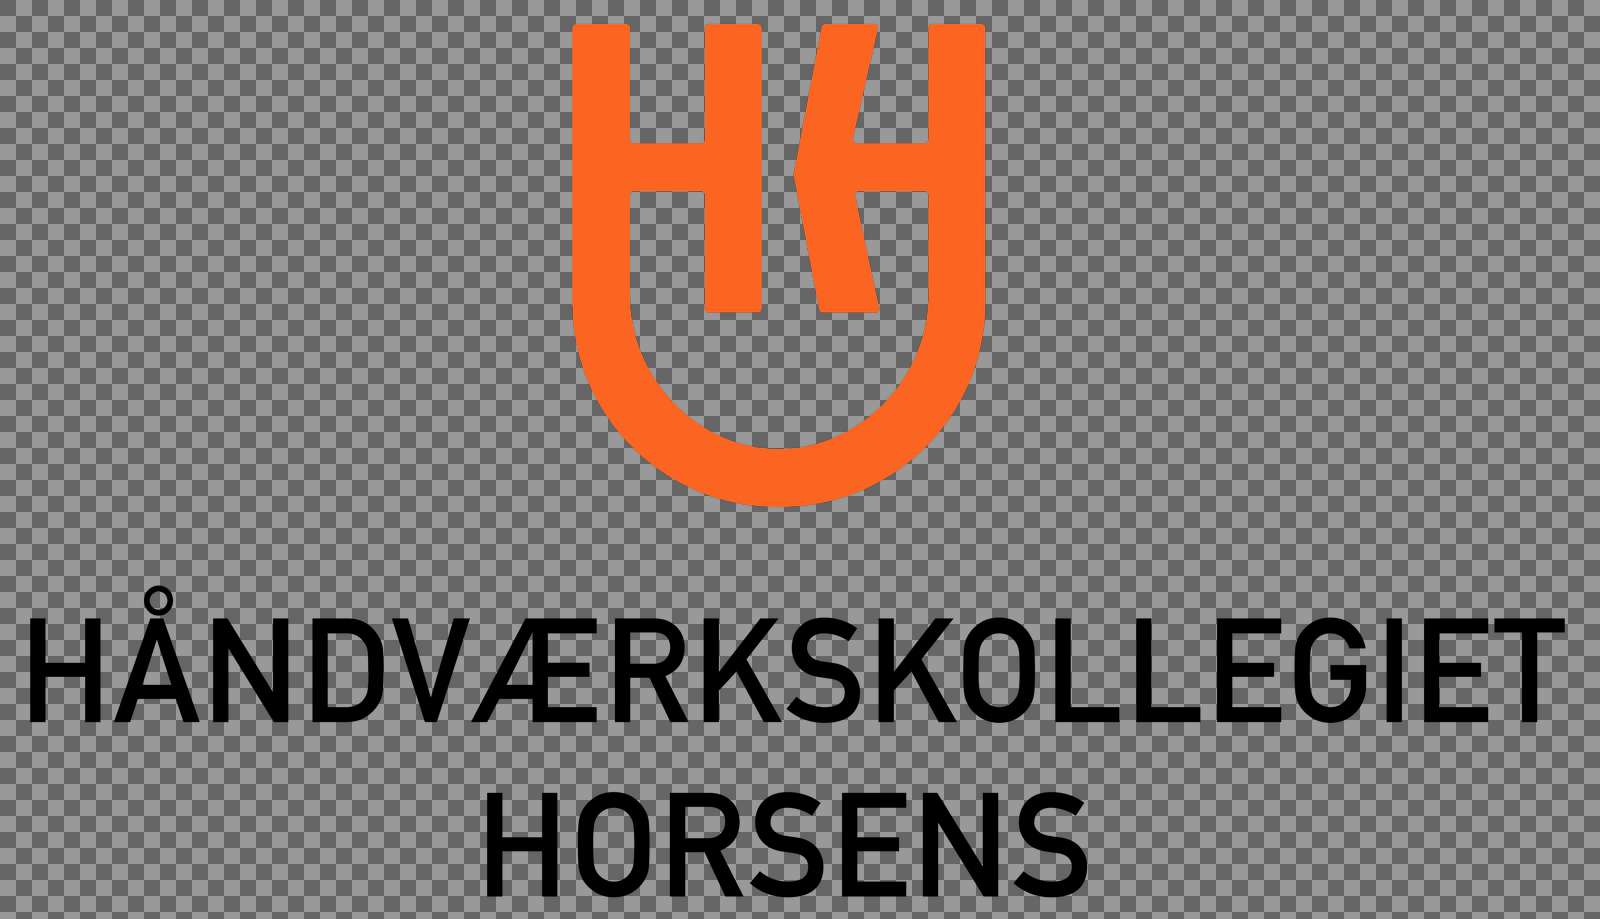 horsens logo vertical orange